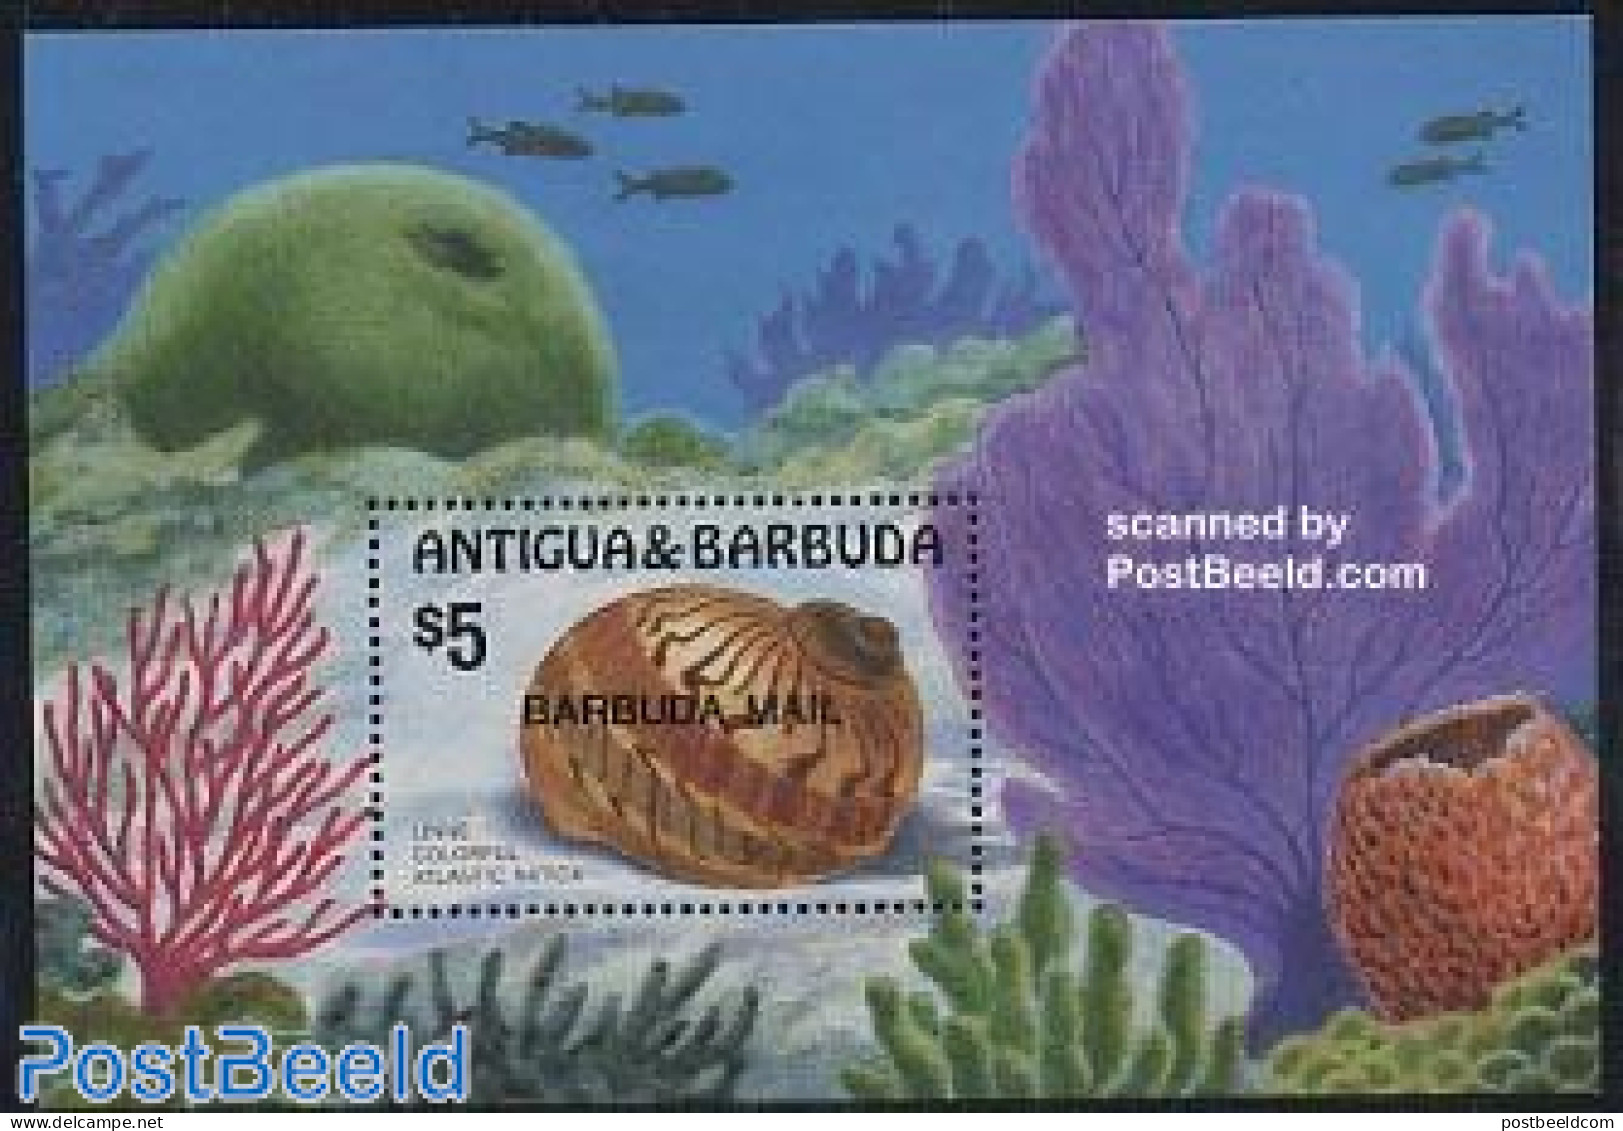 Barbuda 1986 Shells S/s, Mint NH, Nature - Shells & Crustaceans - Meereswelt